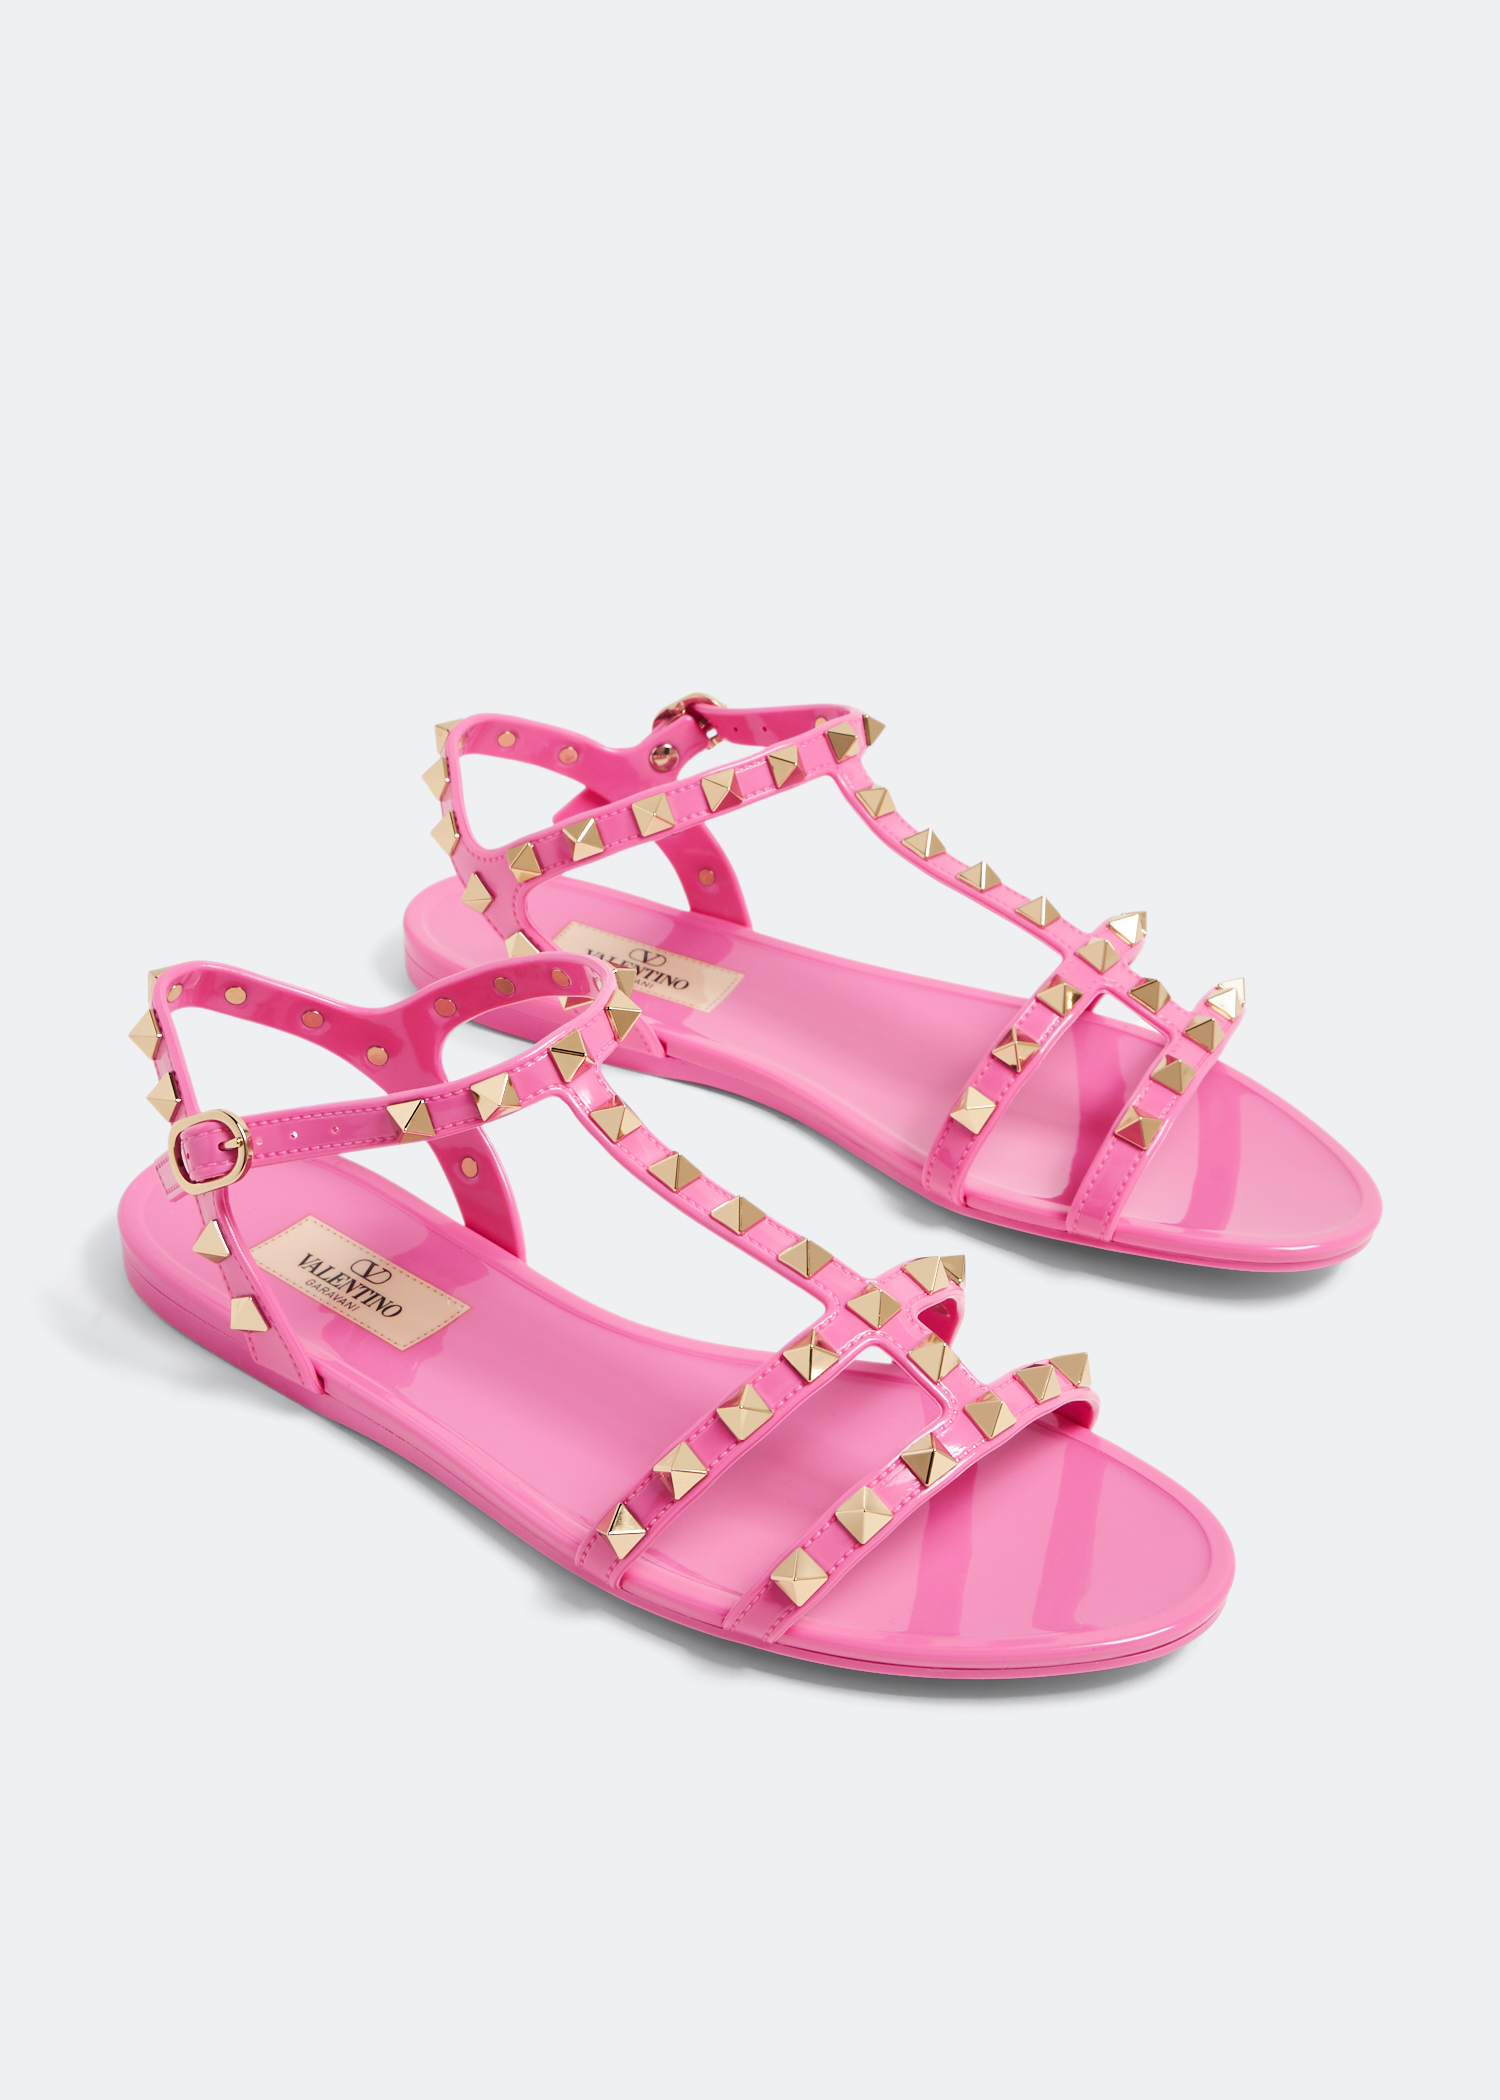 Valentino Garavani Rockstud rubber sandals for Women - Pink in UAE